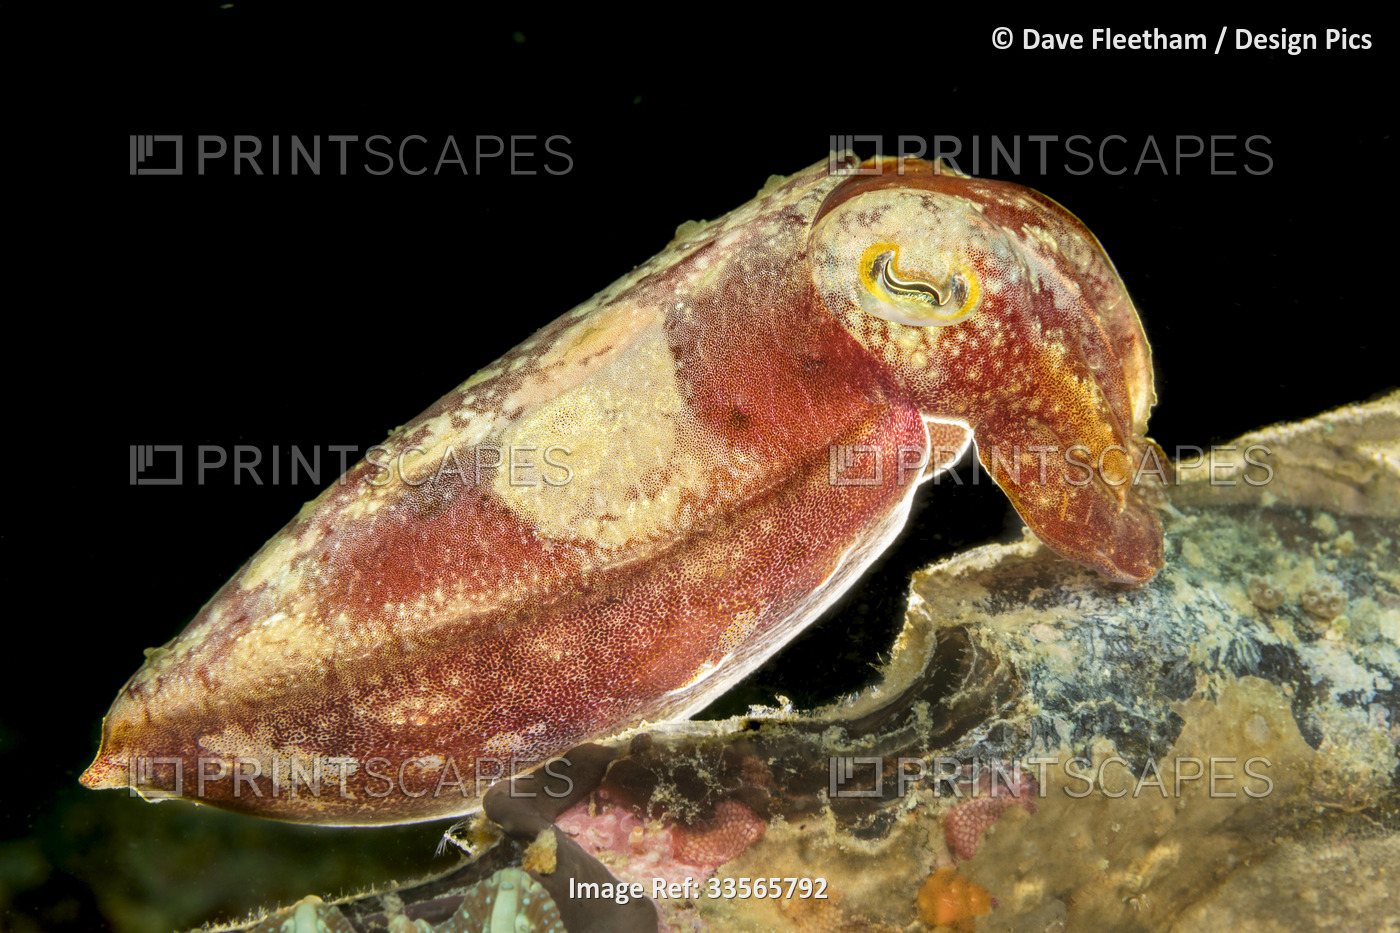 Broadclub cuttlefish (Sepia latimanus) at night; Philippines